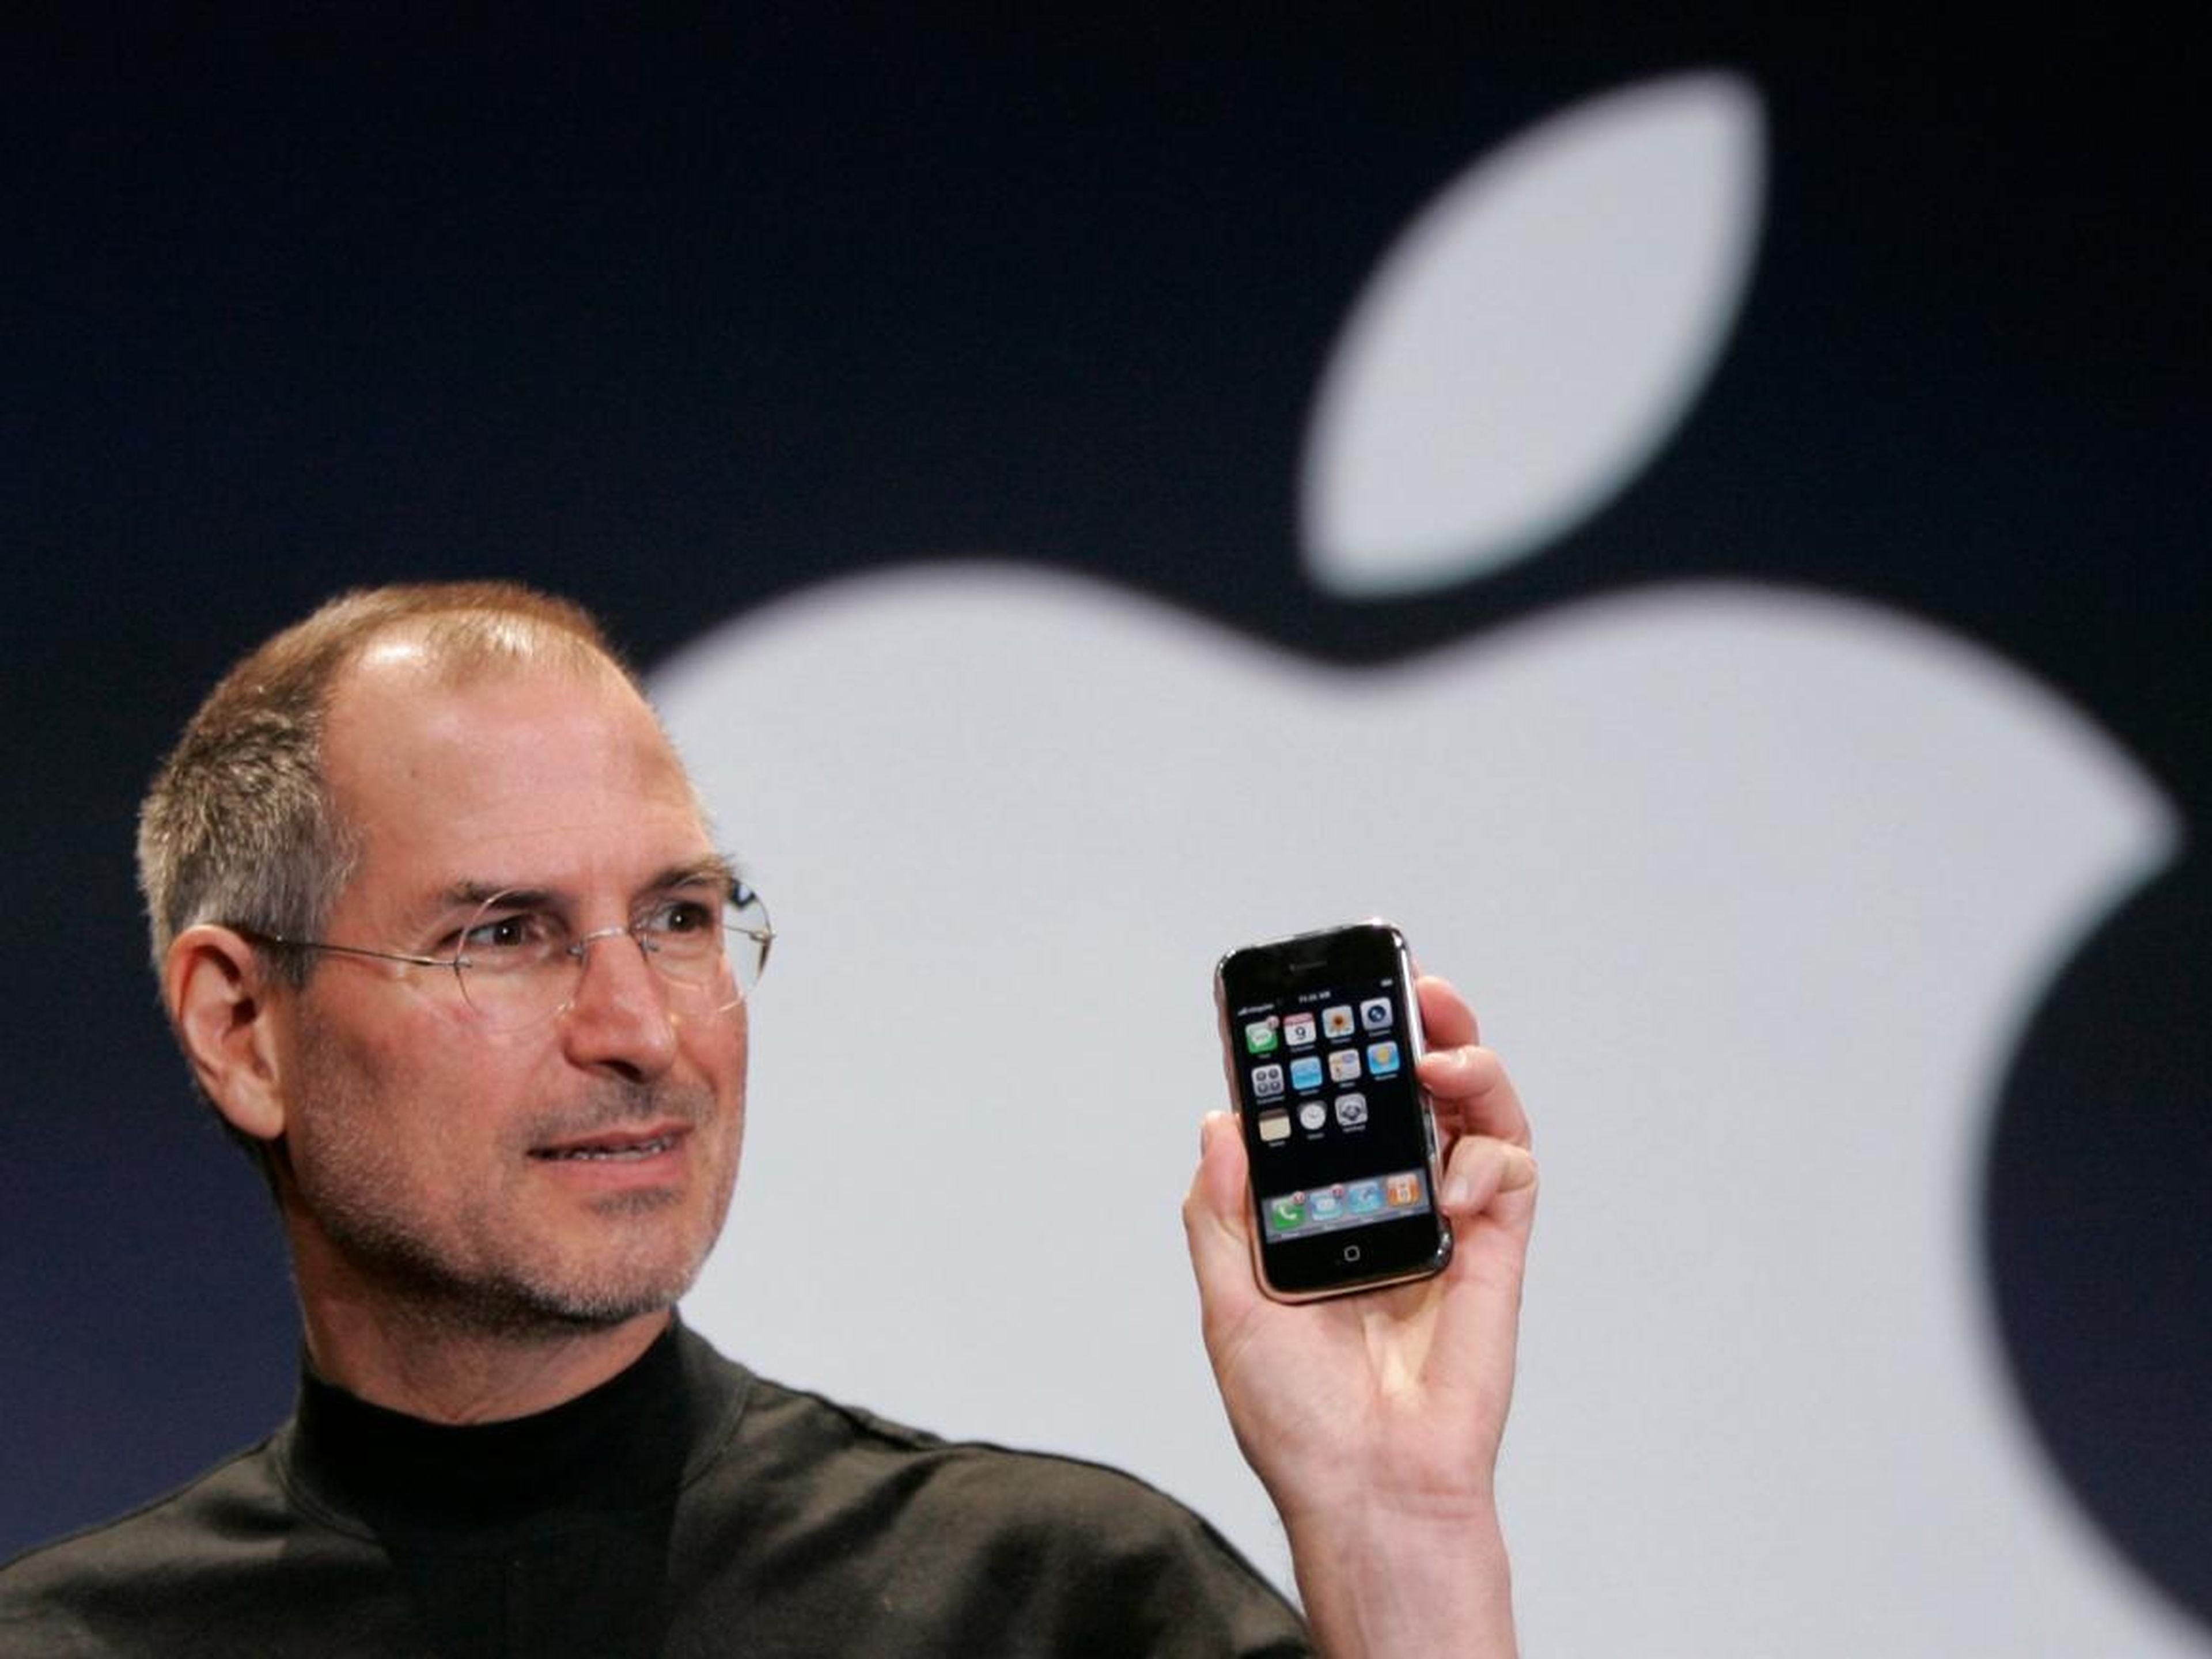 Un iPhone original en perfectas condiciones puede llegar a costar miles de dólares.